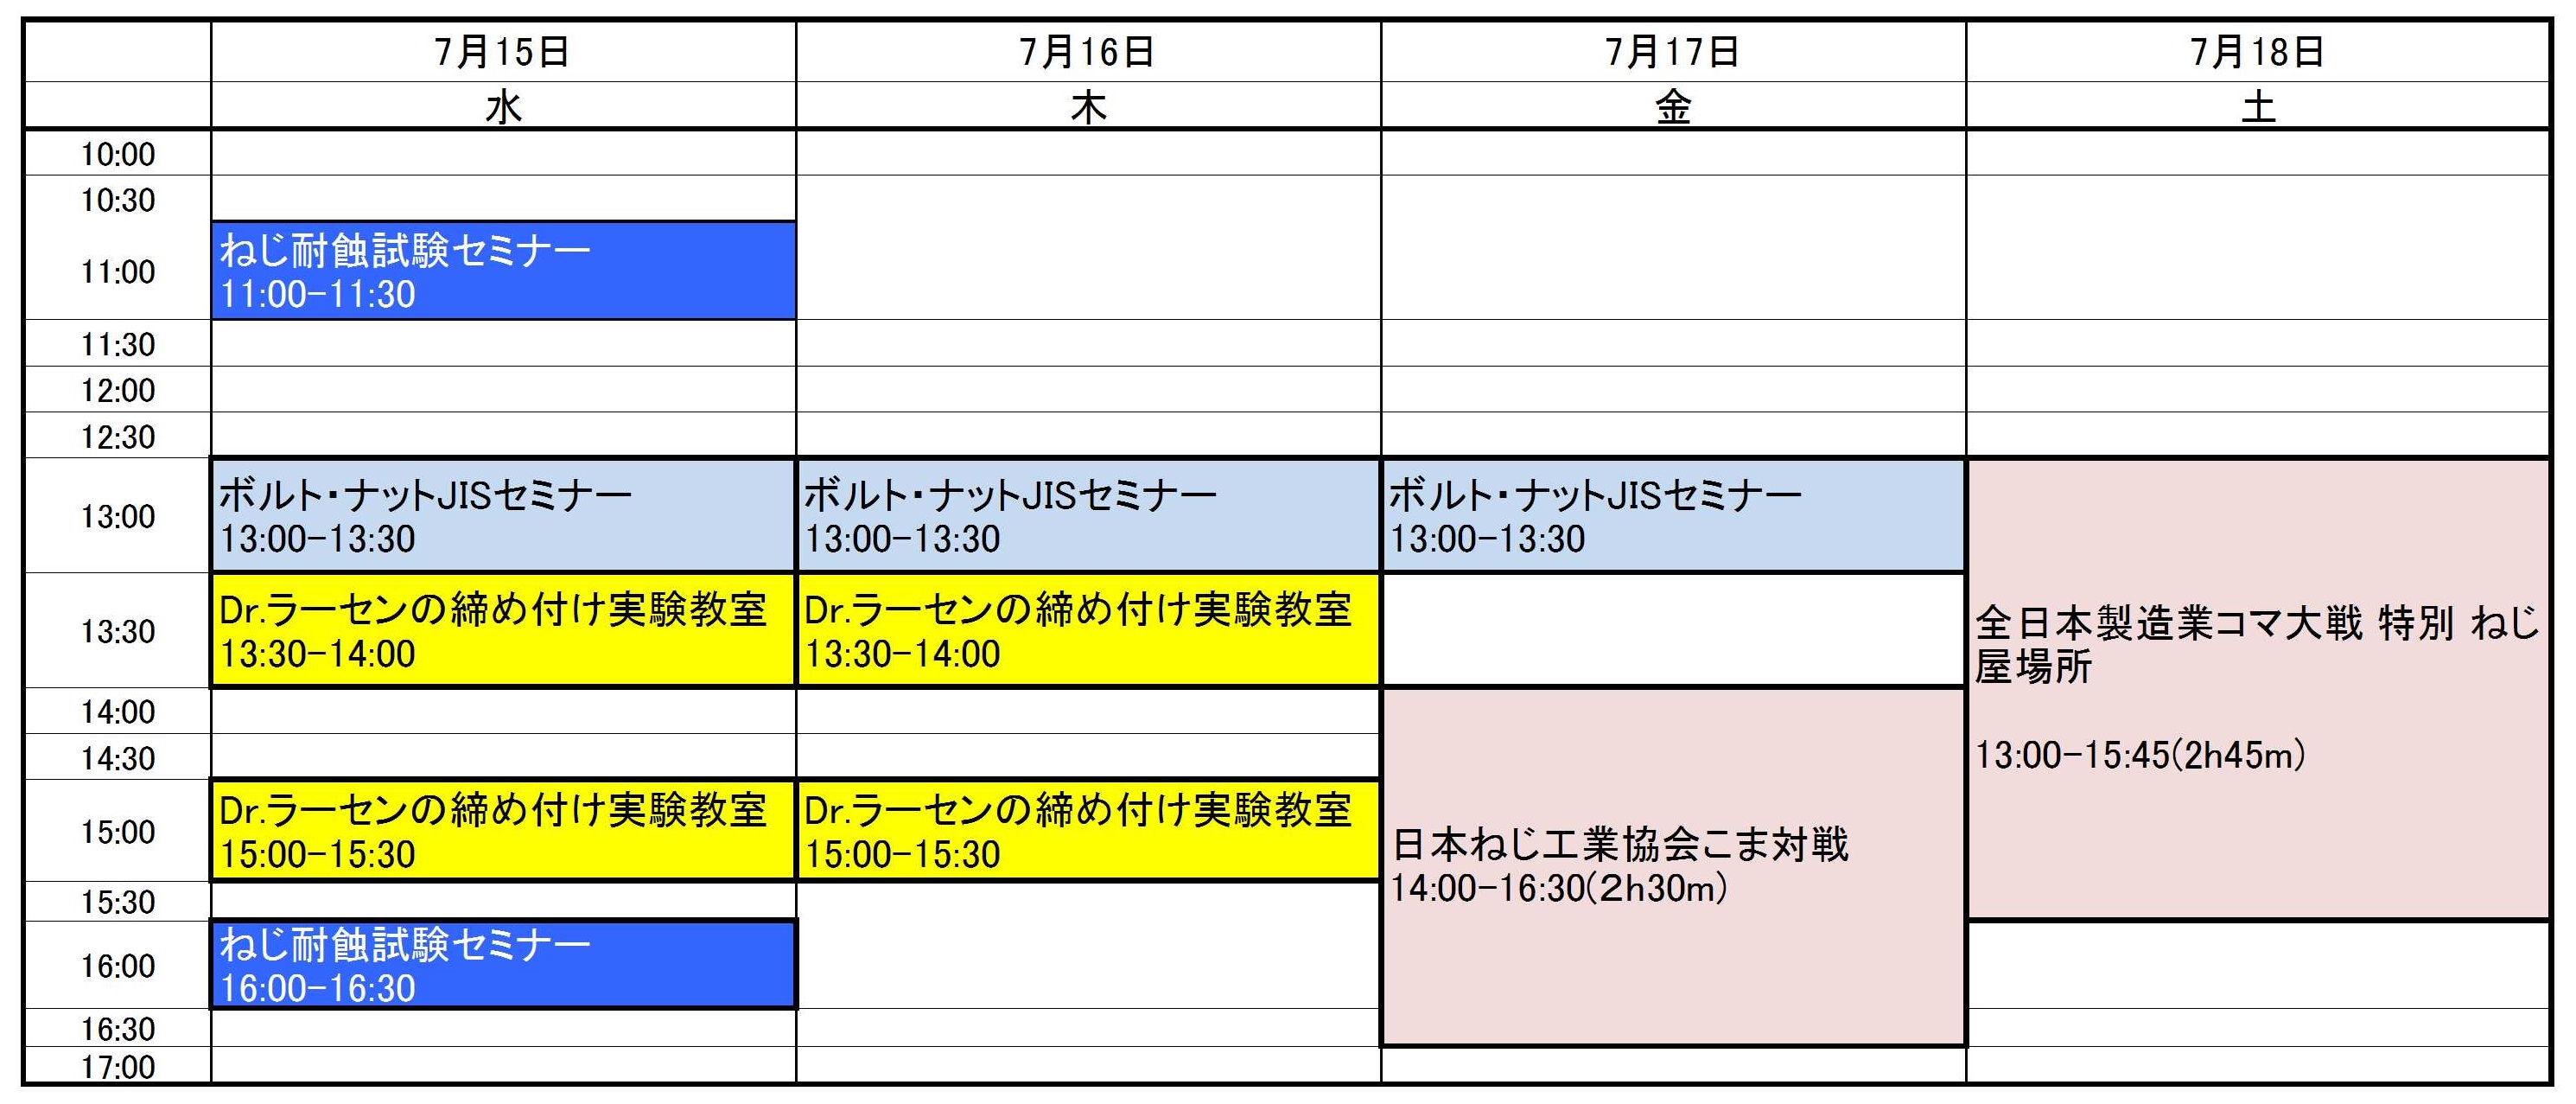 イベントプログラム時間表